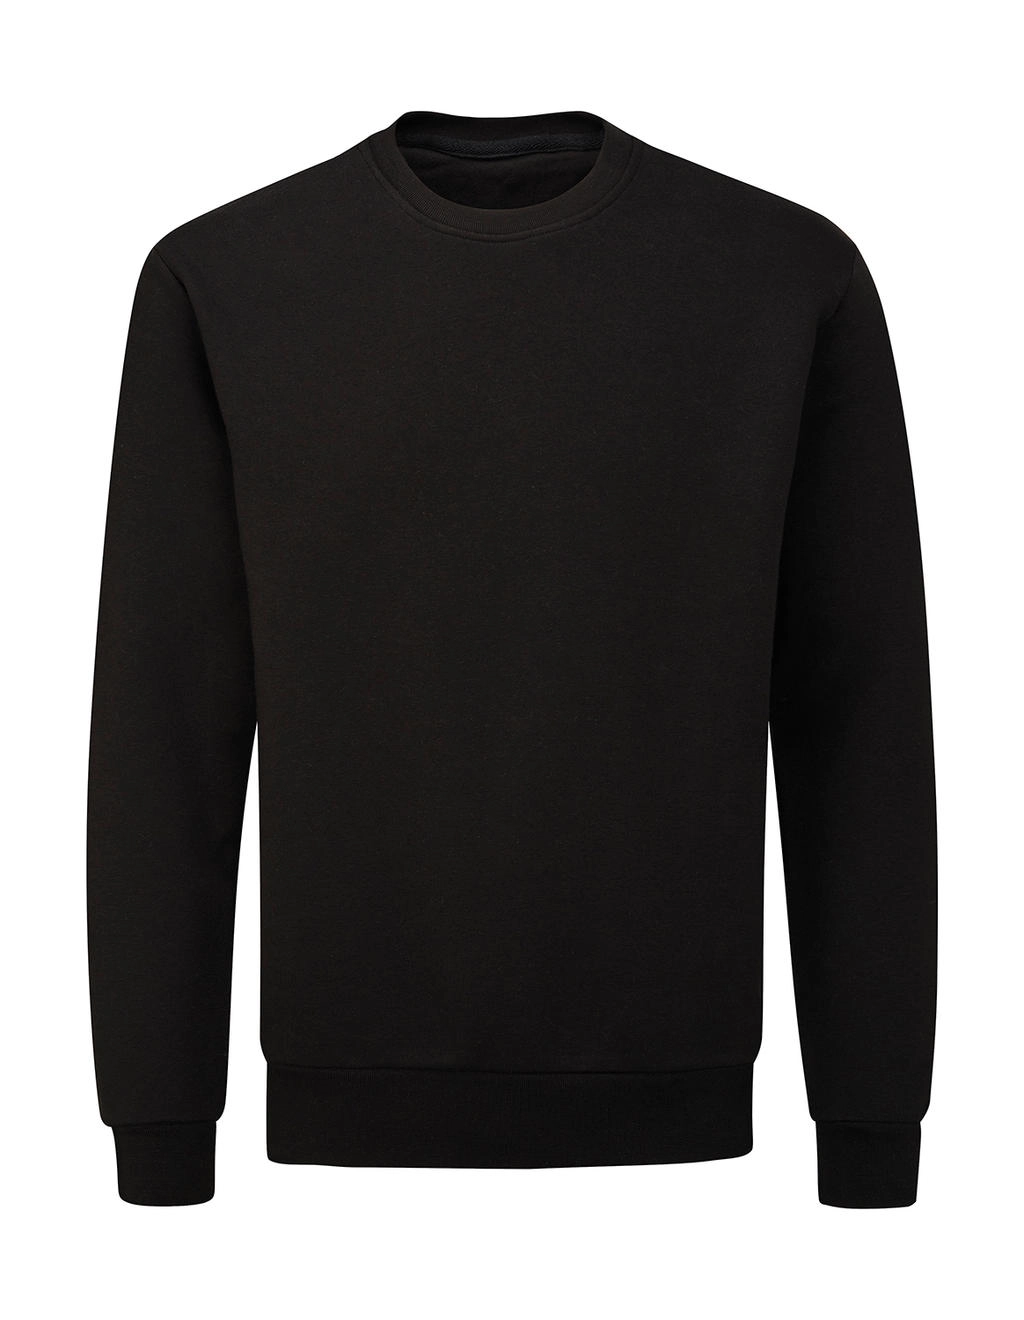 Essential Sweatshirt zum Besticken und Bedrucken in der Farbe Black mit Ihren Logo, Schriftzug oder Motiv.